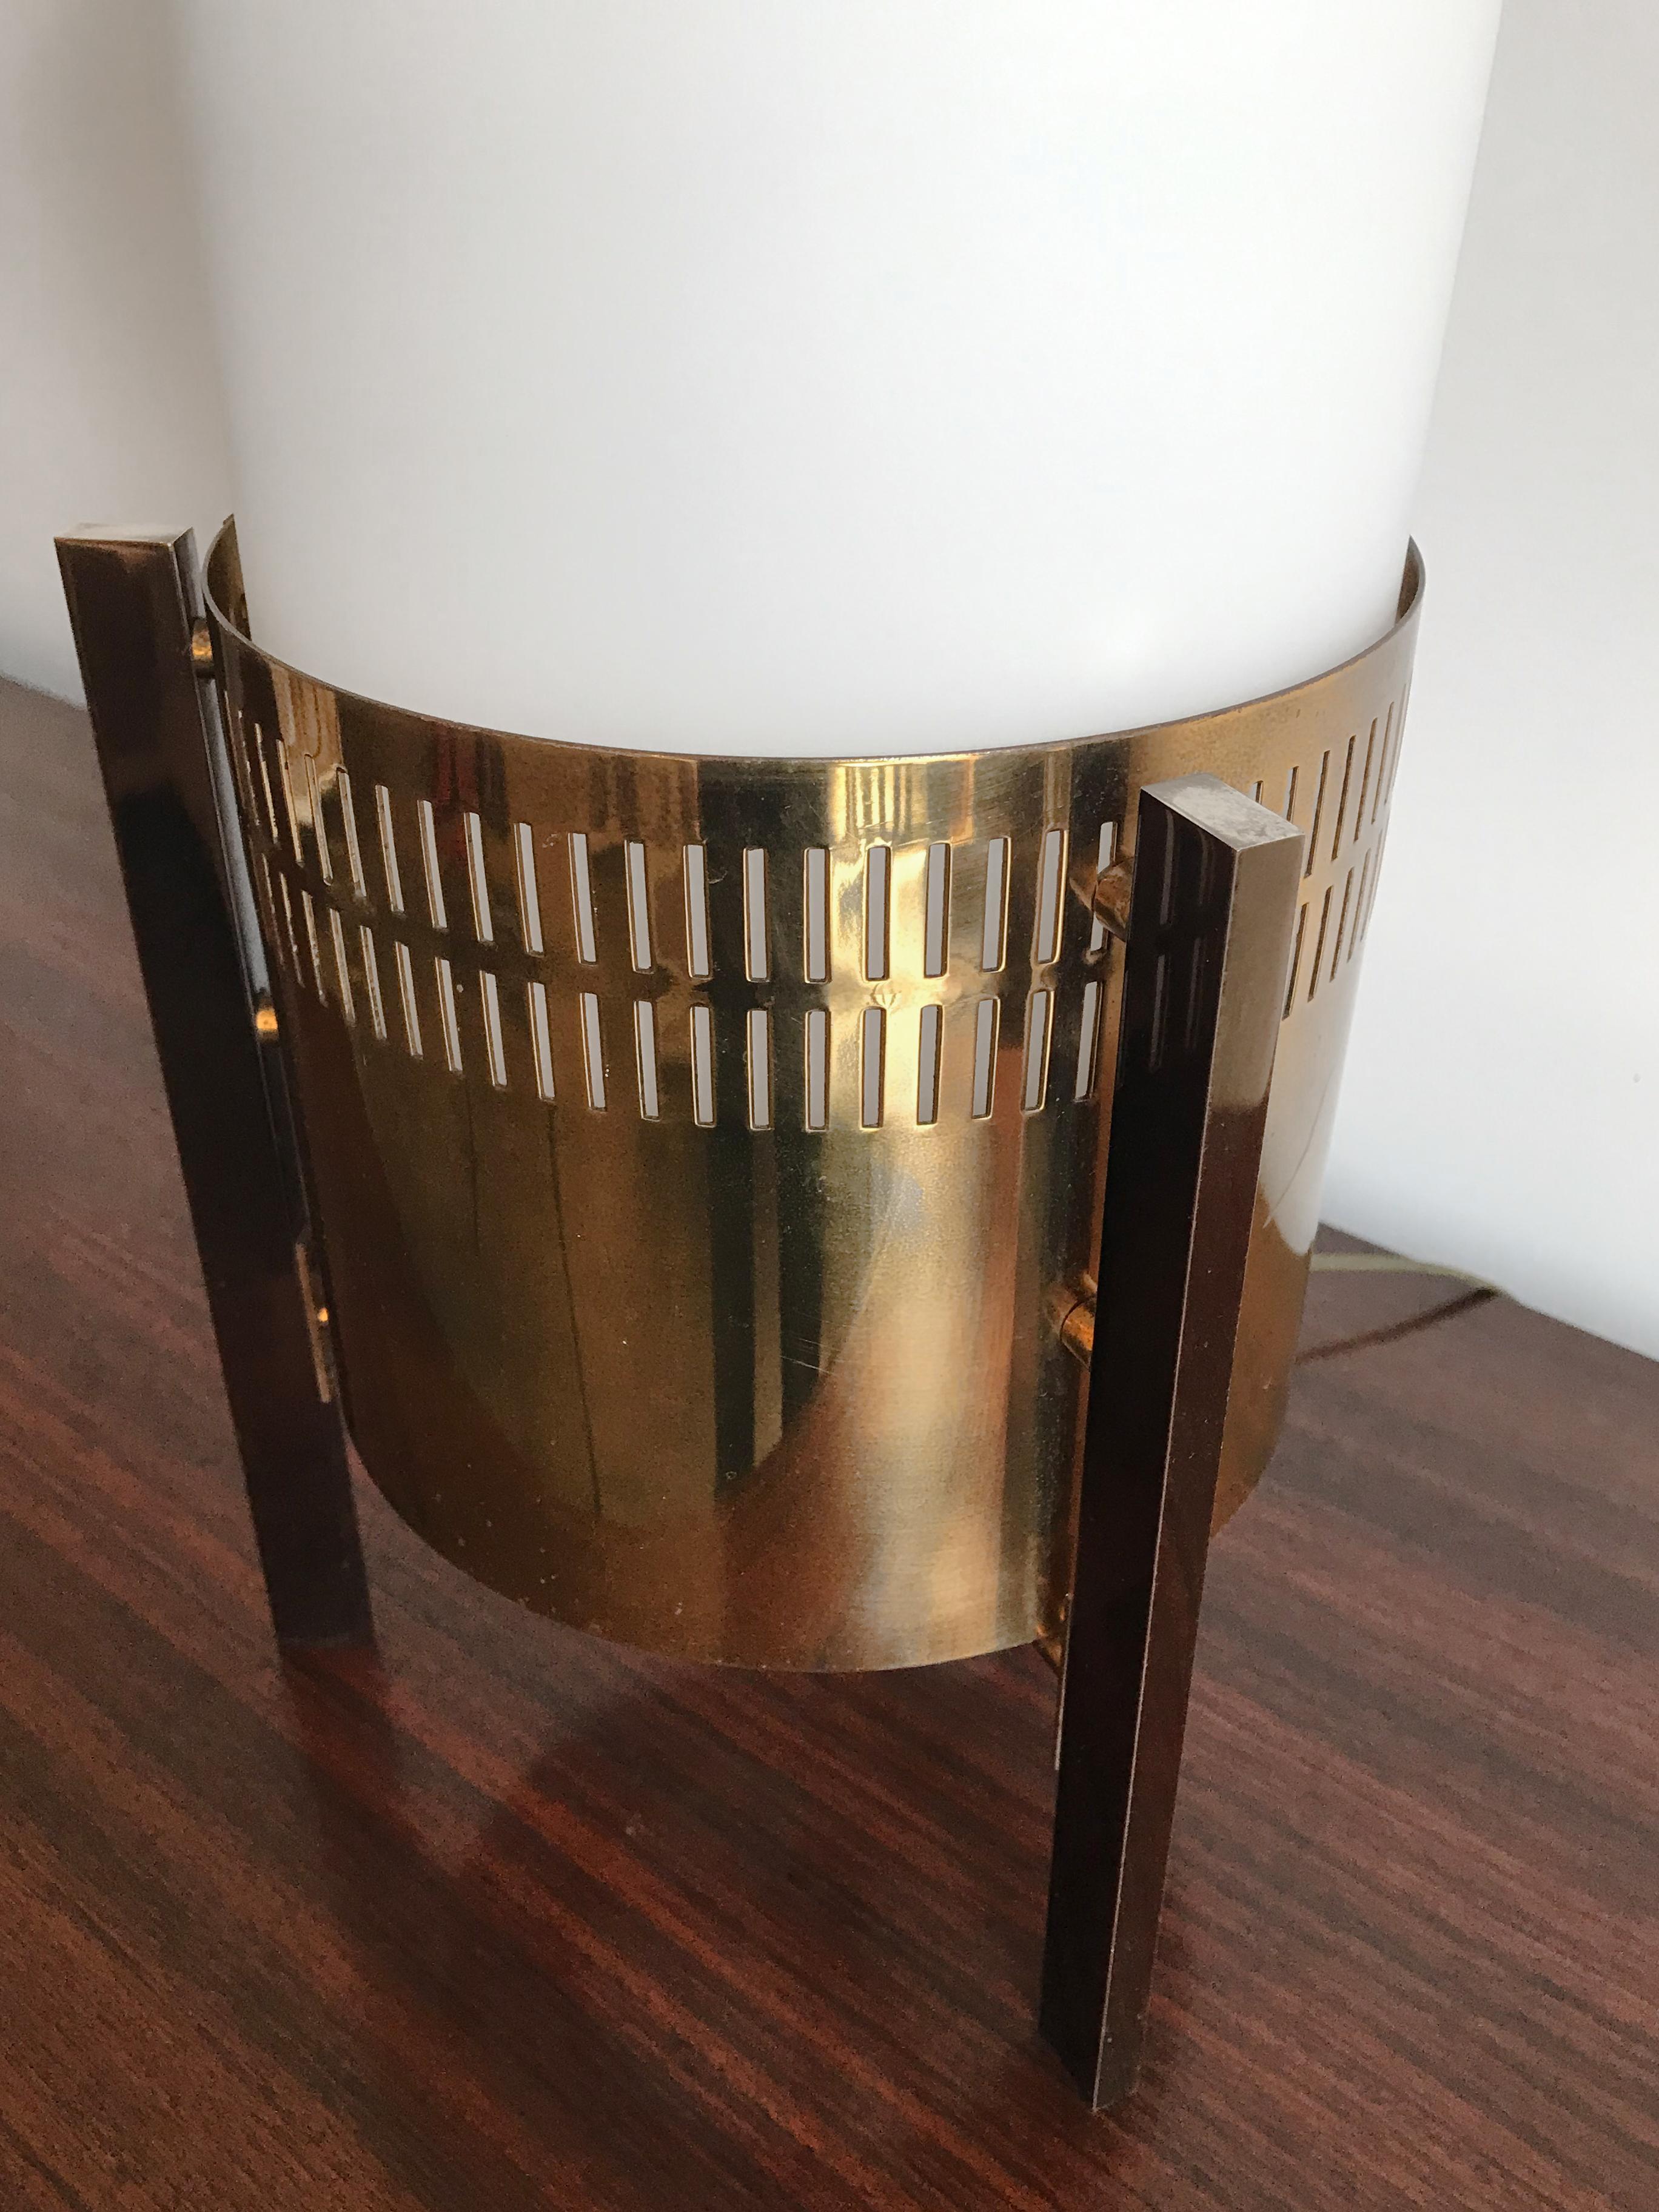 Stilnovo Midcentury Italian Brass Glass Table Lamp, Floor Lamp 1950s For Sale 7